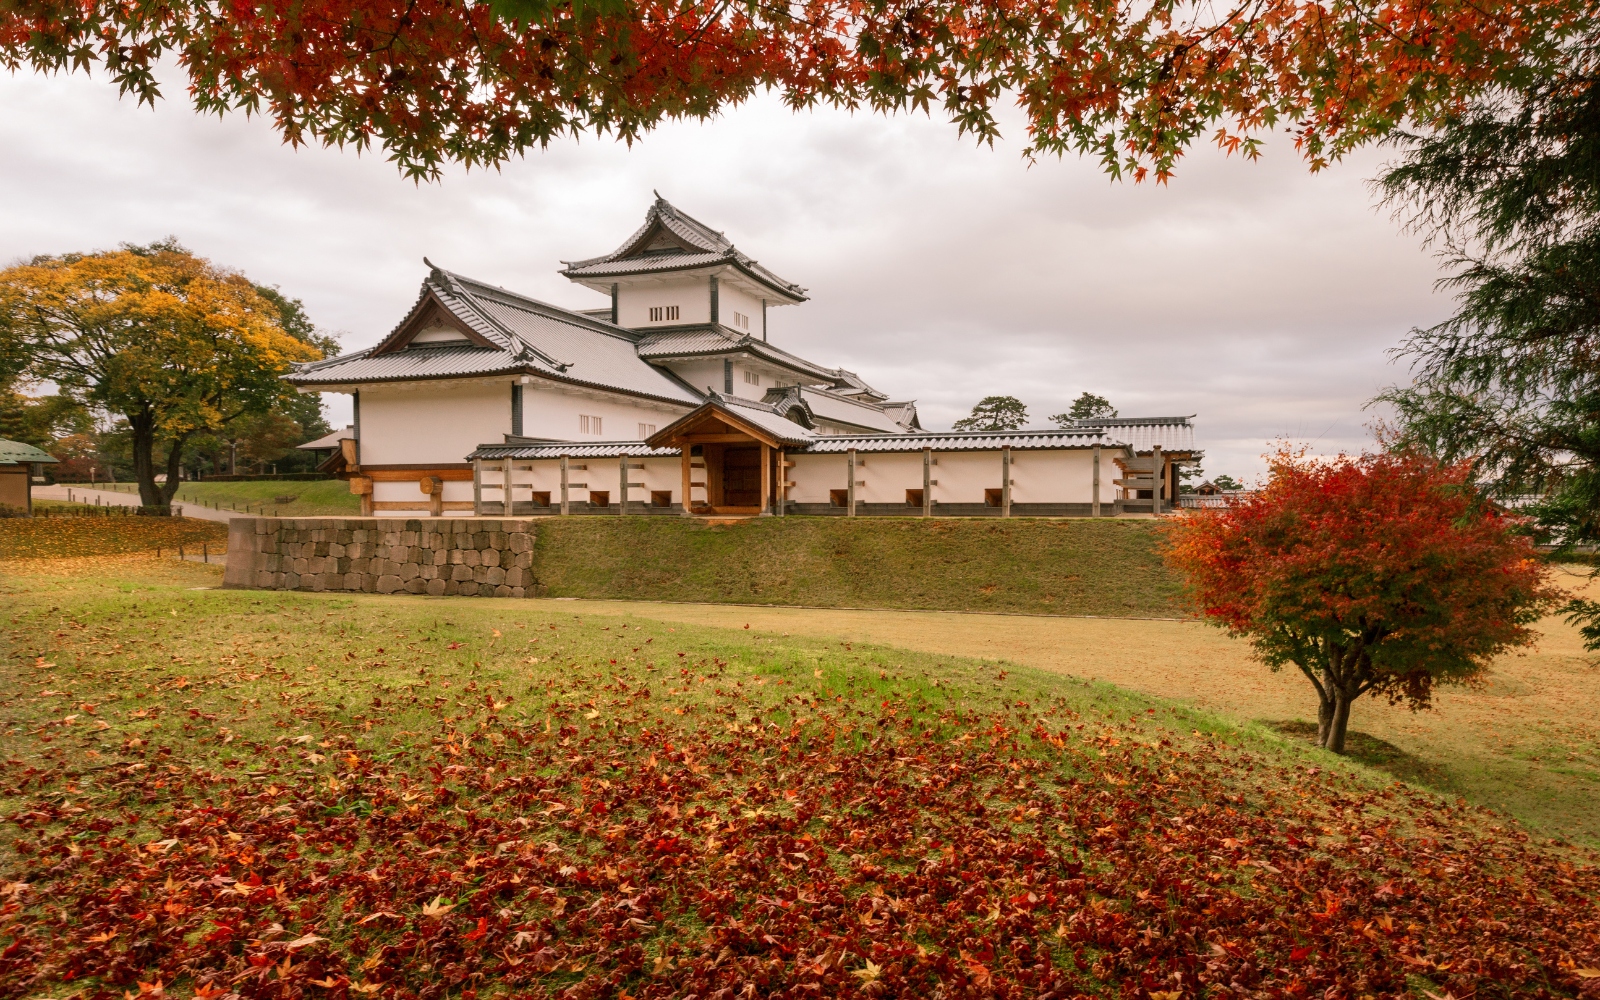 Autumn foliage at Kanazawa Castle